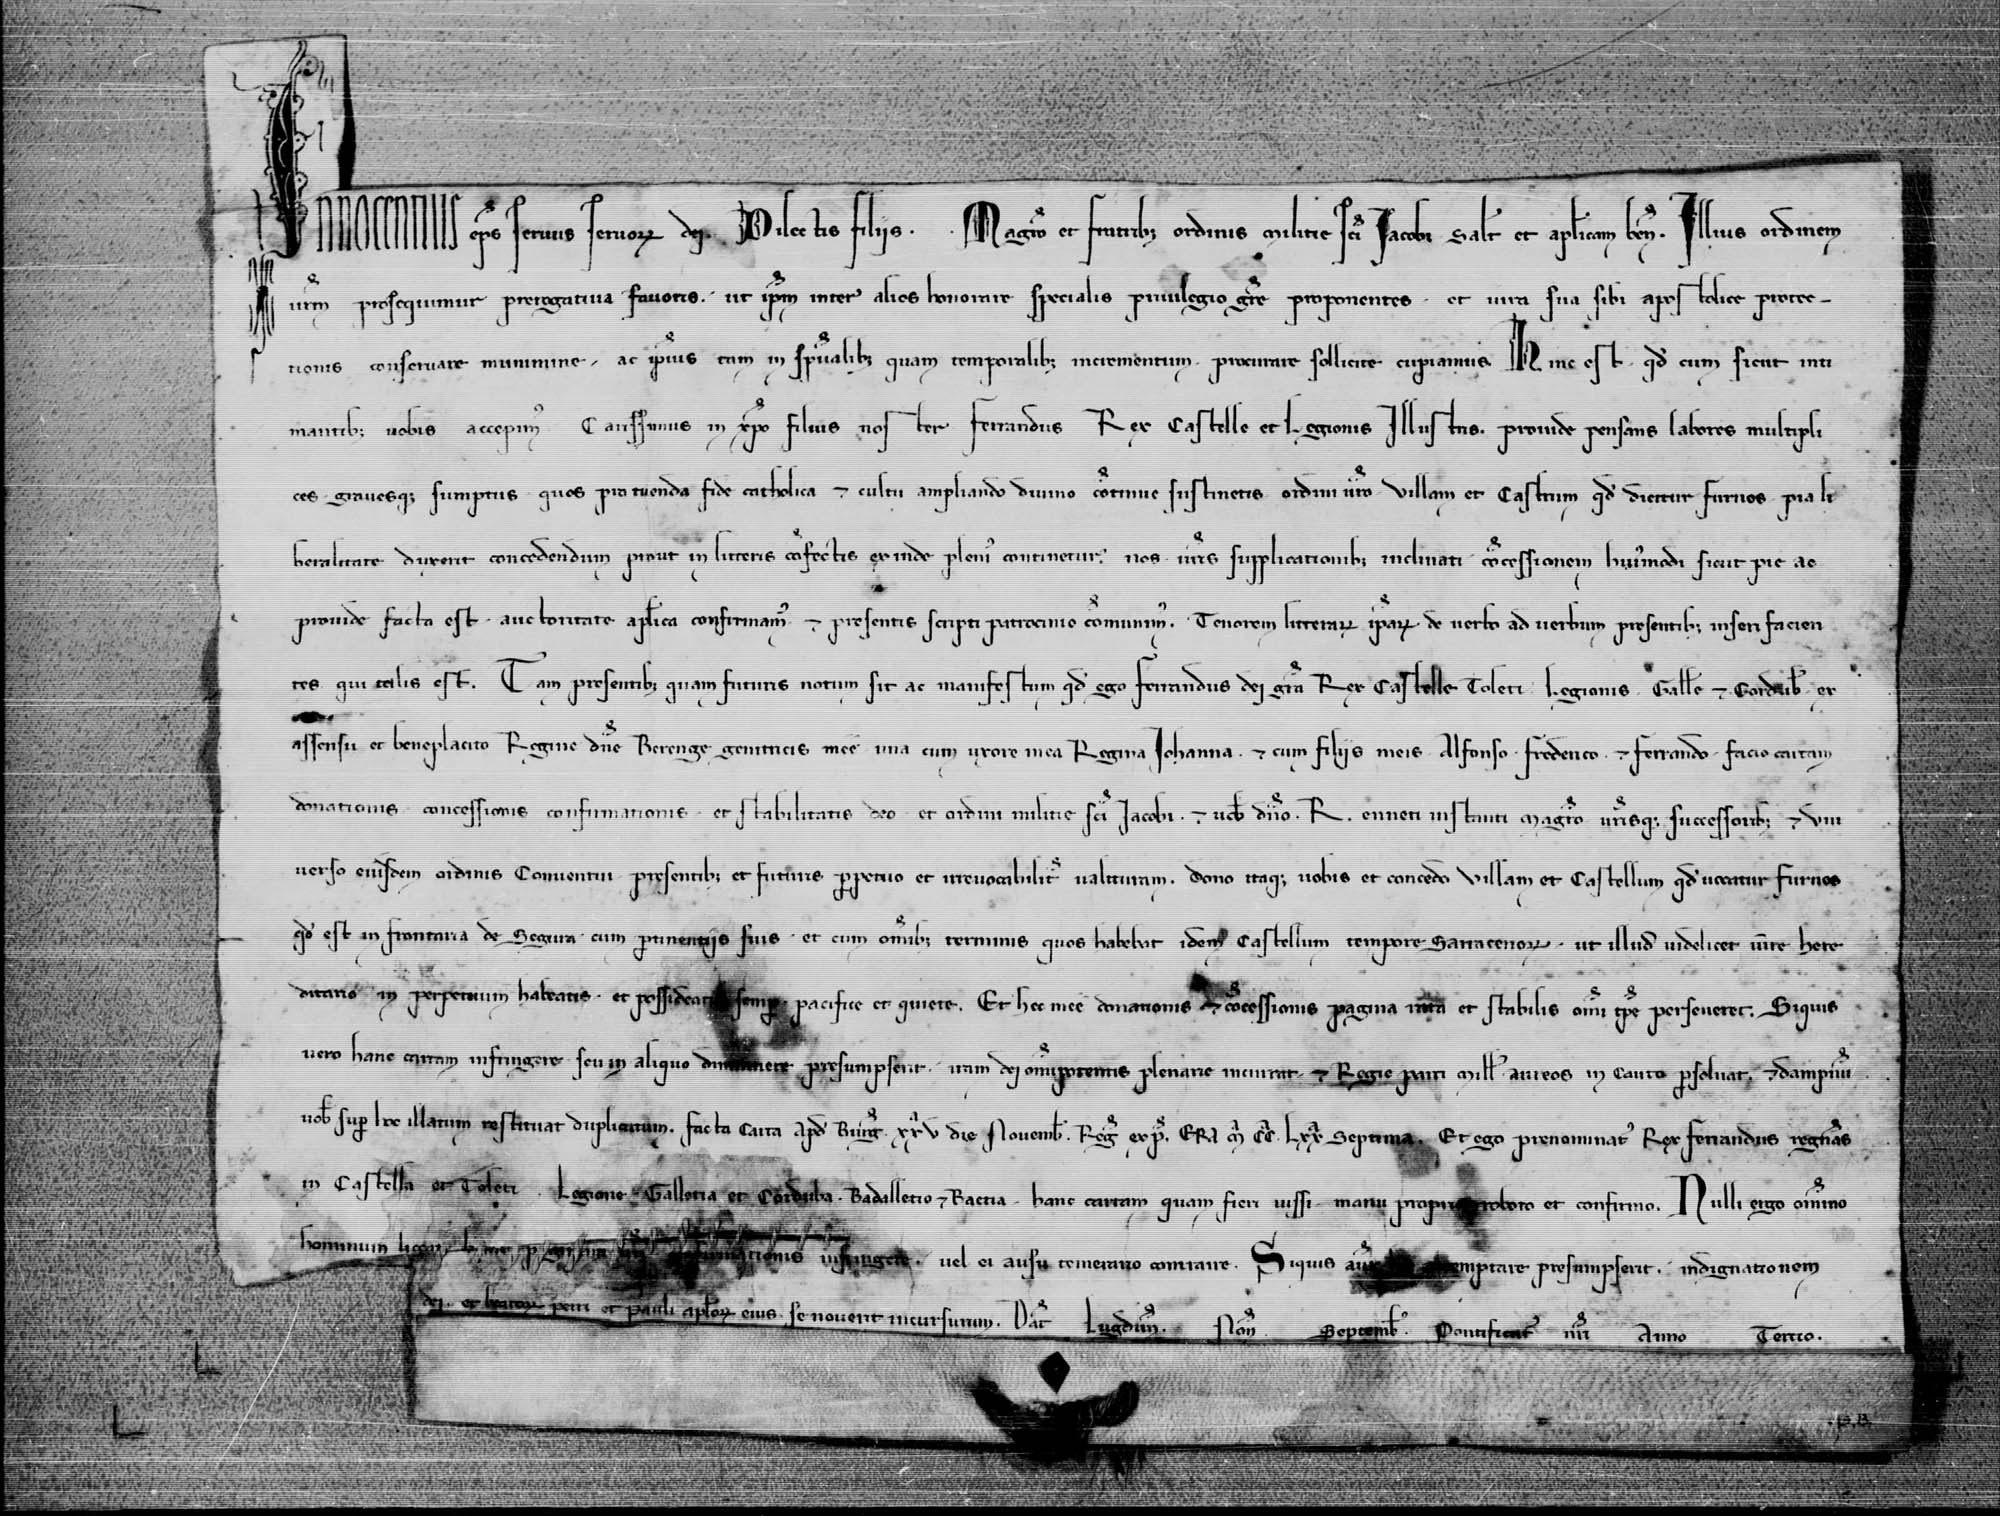 Breve de Inocencio IV confirmando la concesión hecha en 1232 por Fernando III a la Orden de Santiago de la villa de Hornos, su castillo y su término.